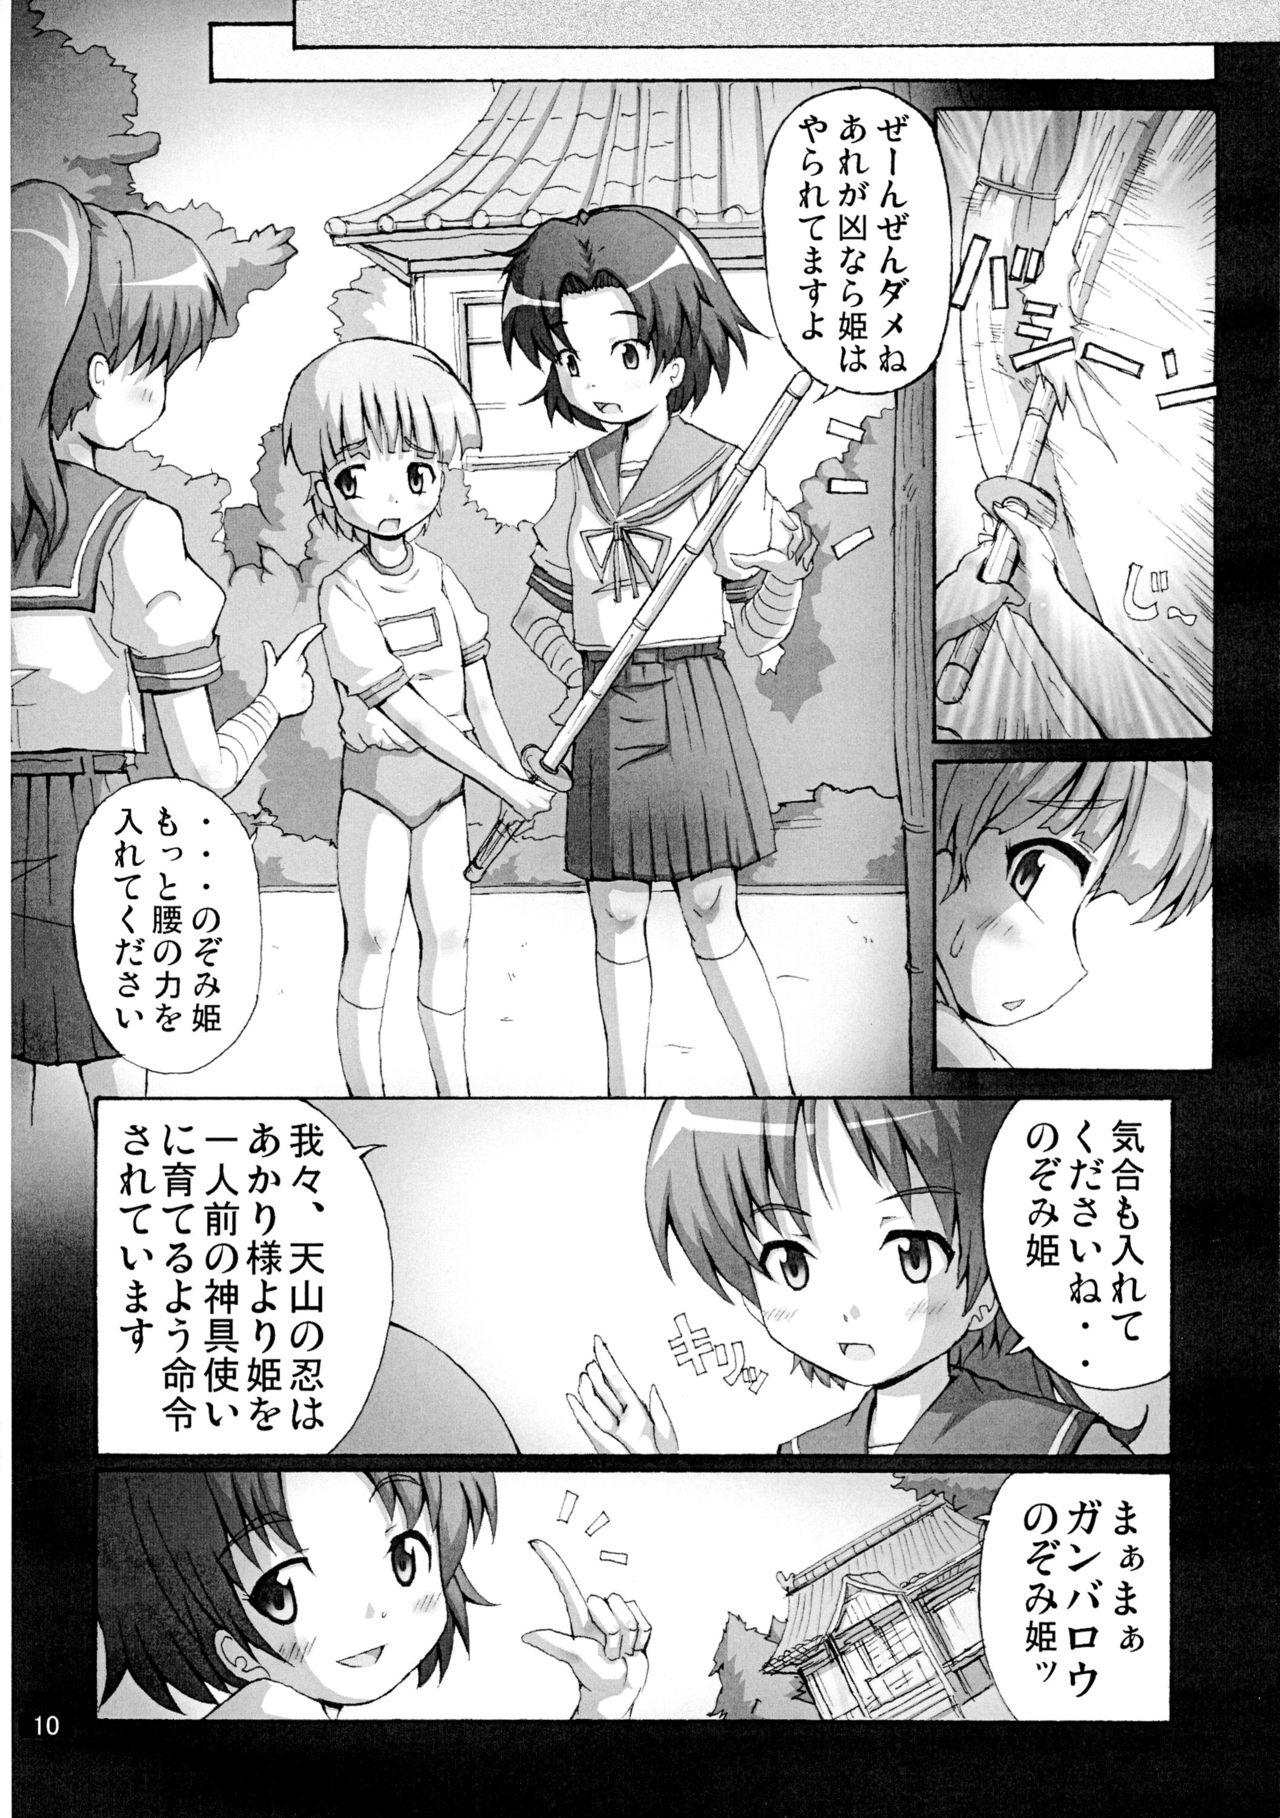 Anime Kaiun no Taimashi Nozomi 5 1/ 2 Highschool - Page 10